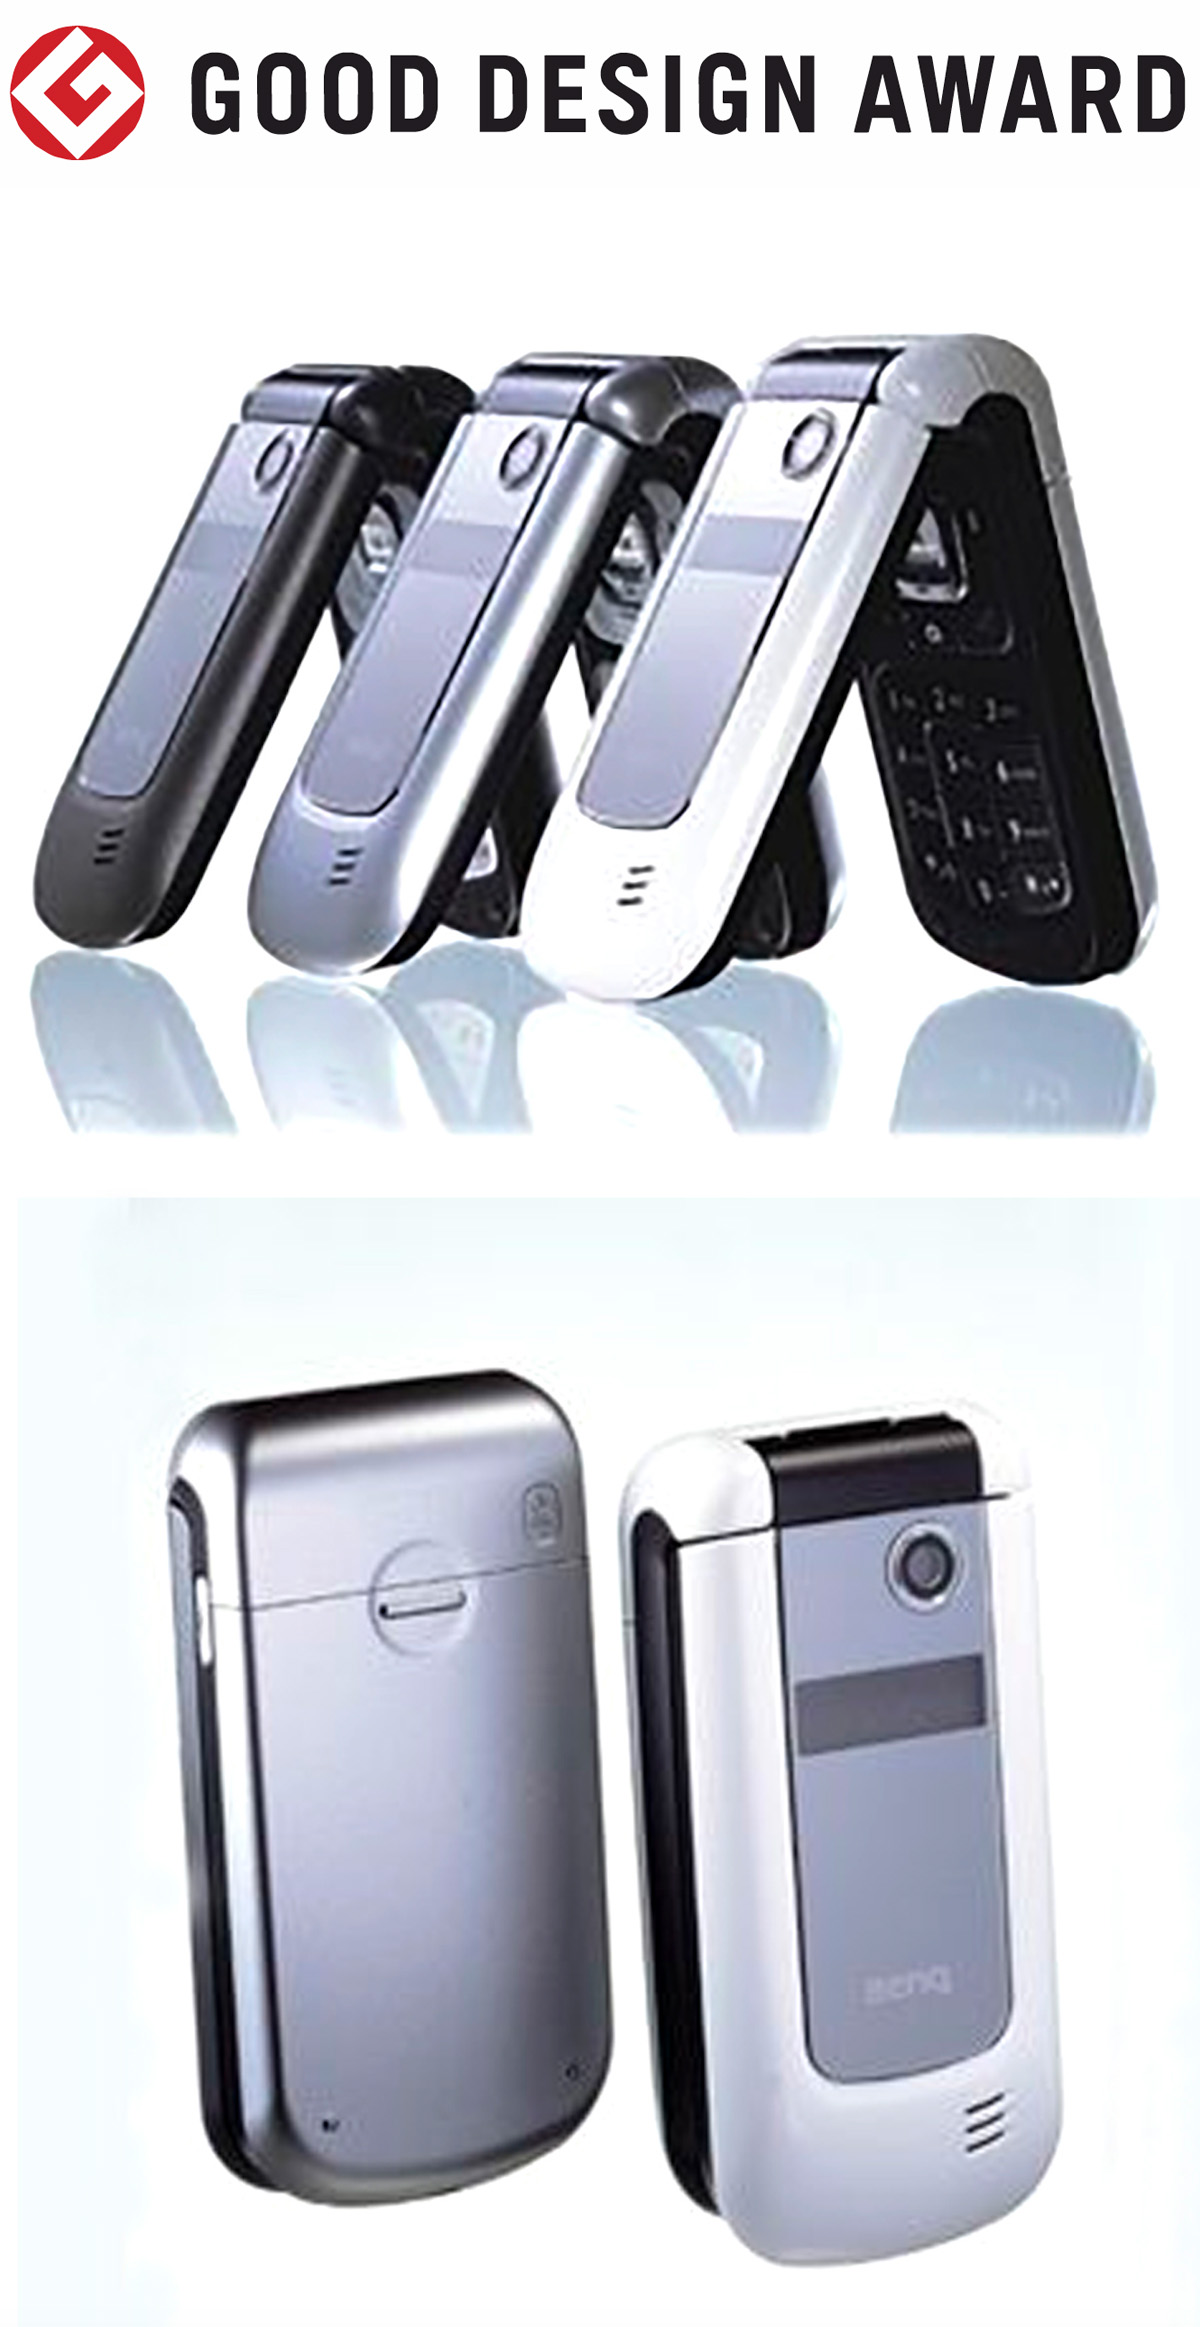 【日本】明基BenQ手机M580获颁2005年度G-Mark设计大奖（GOOD DESIGN AWARD 2005）